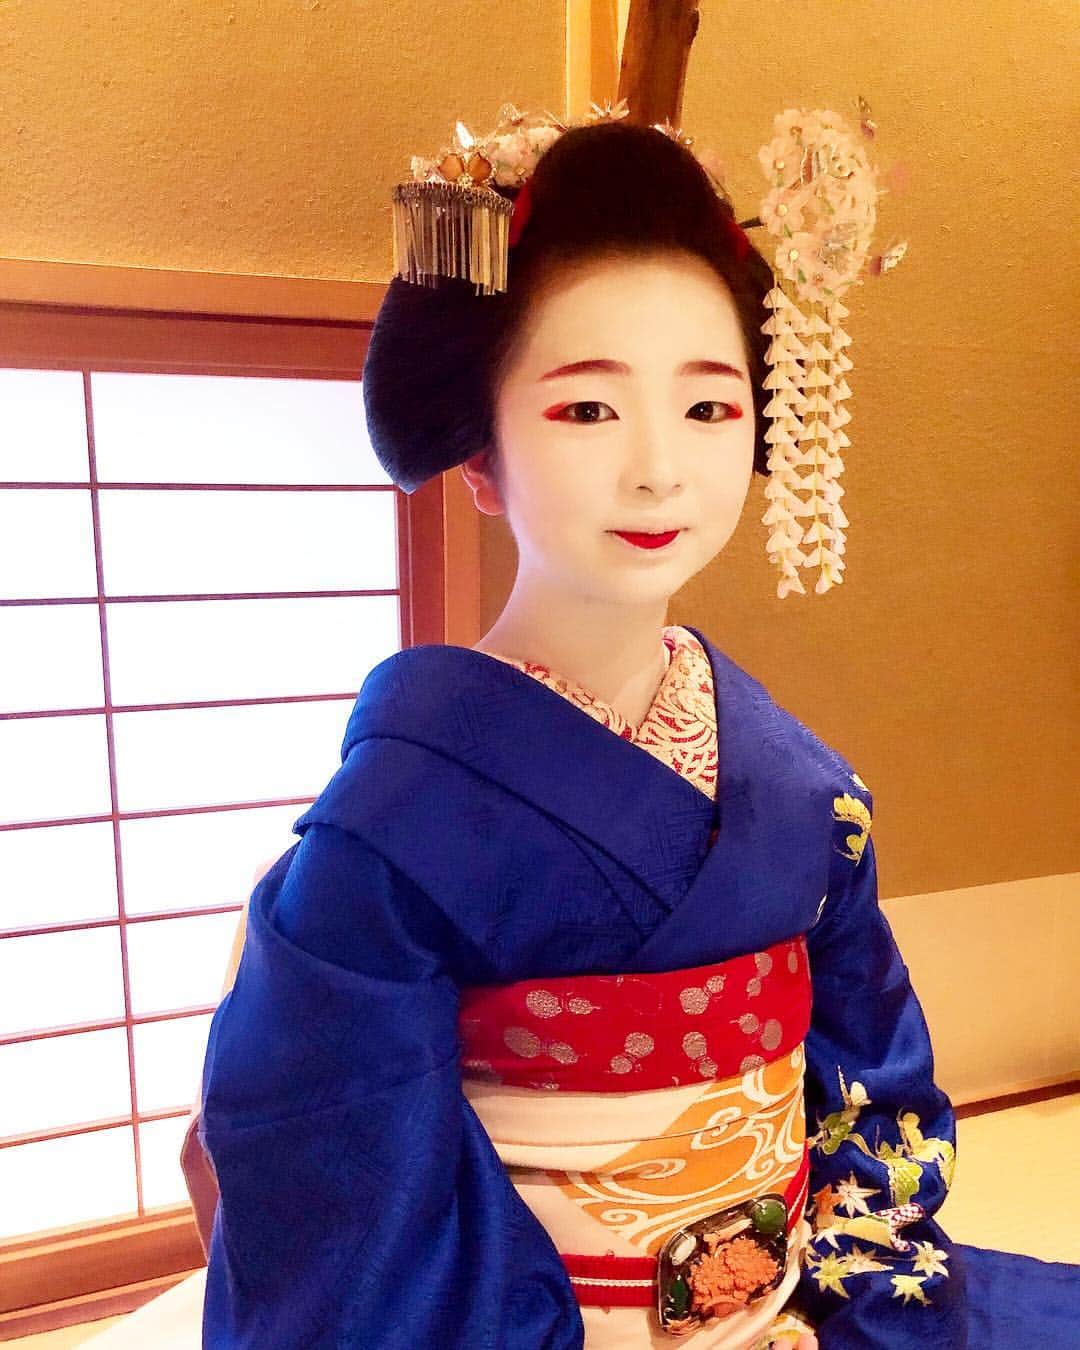 朝日光輝さんのインスタグラム写真 朝日光輝instagram 舞妓さん 伝統ある美しさ 勉強になりました 京都 Kyoto 上七軒 舞妓 舞妓さん 市ぎく 綺麗 美しい 素晴らしい 日本髪 髪飾り 着物 日本 Japan 桜 さくら サクラ 伝統 文化